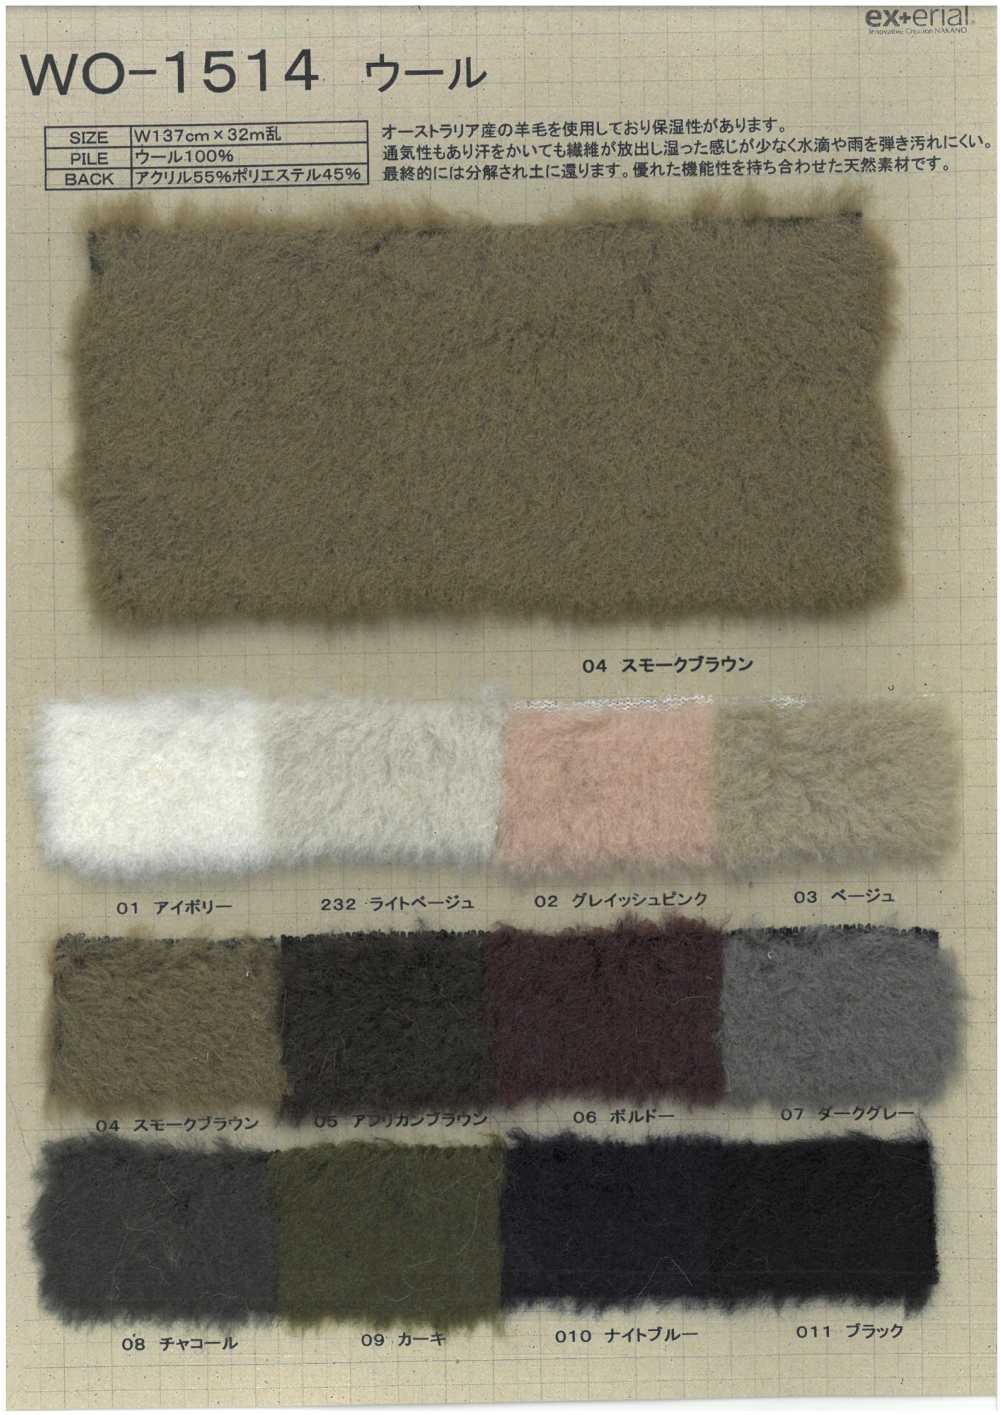 WO-1514 Fourrure Artisanale [laine De Mouton][Fabrication De Textile] Industrie Du Jersey Nakano